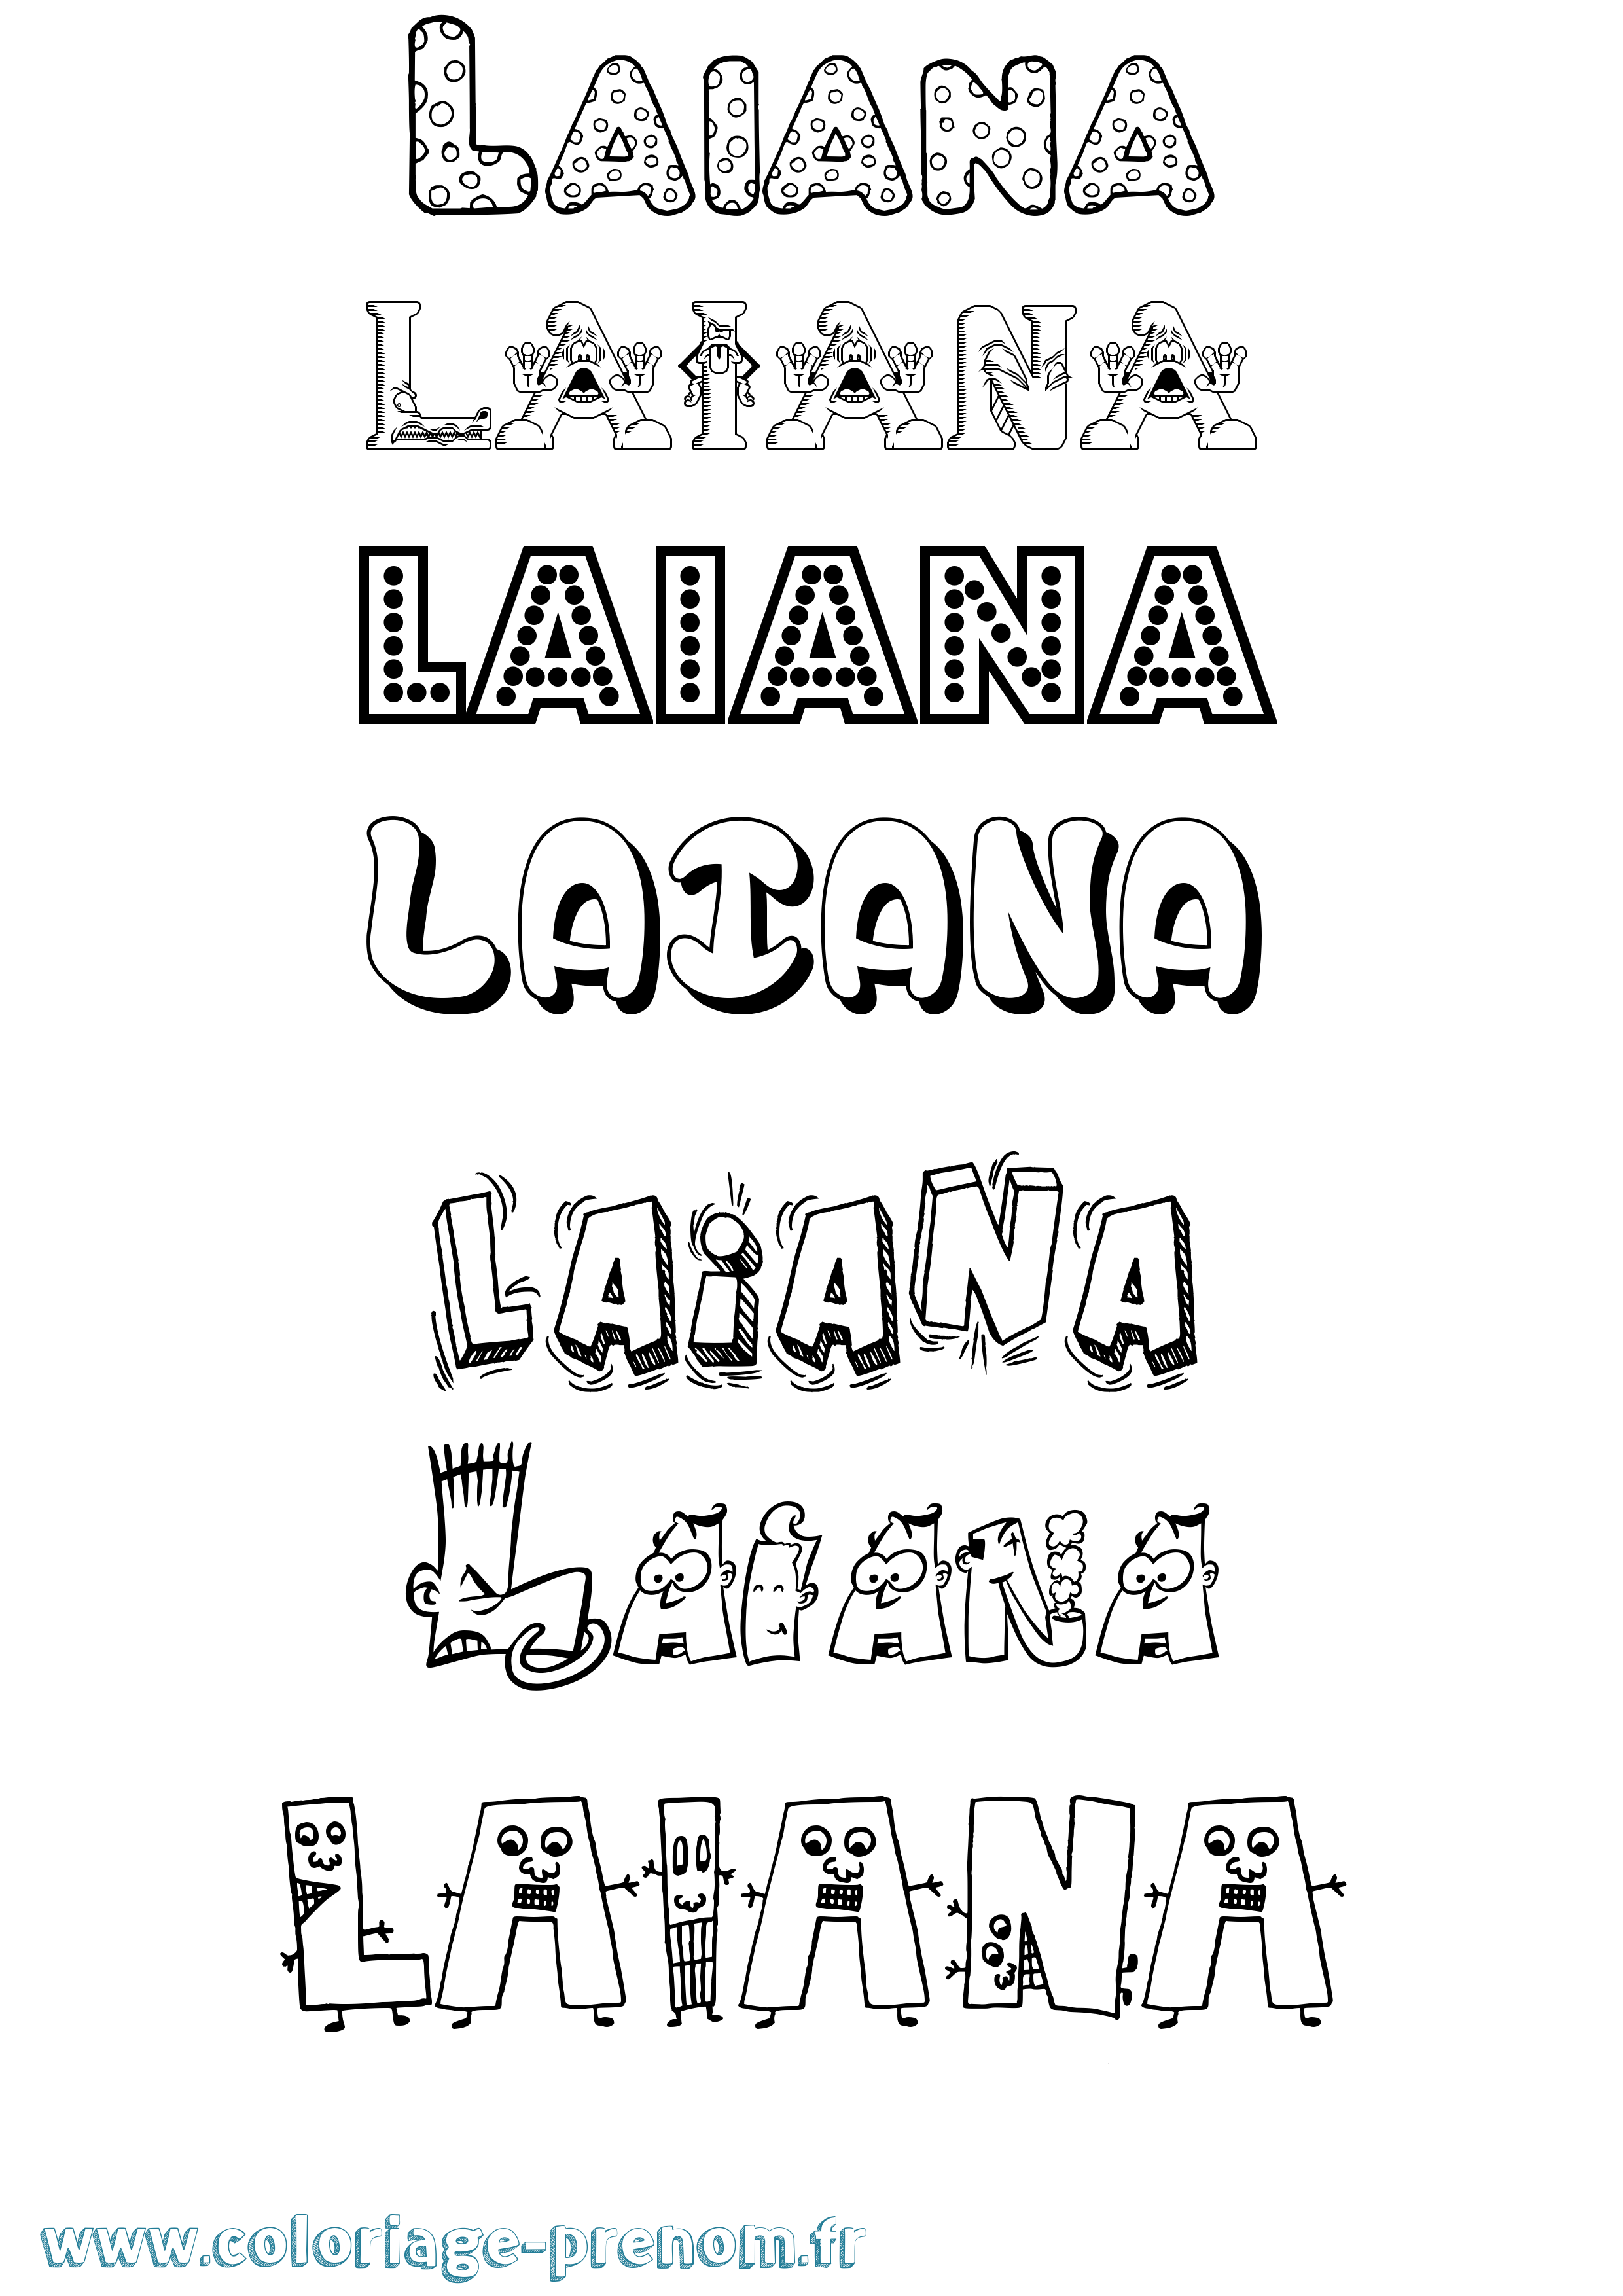 Coloriage prénom Laiana Fun